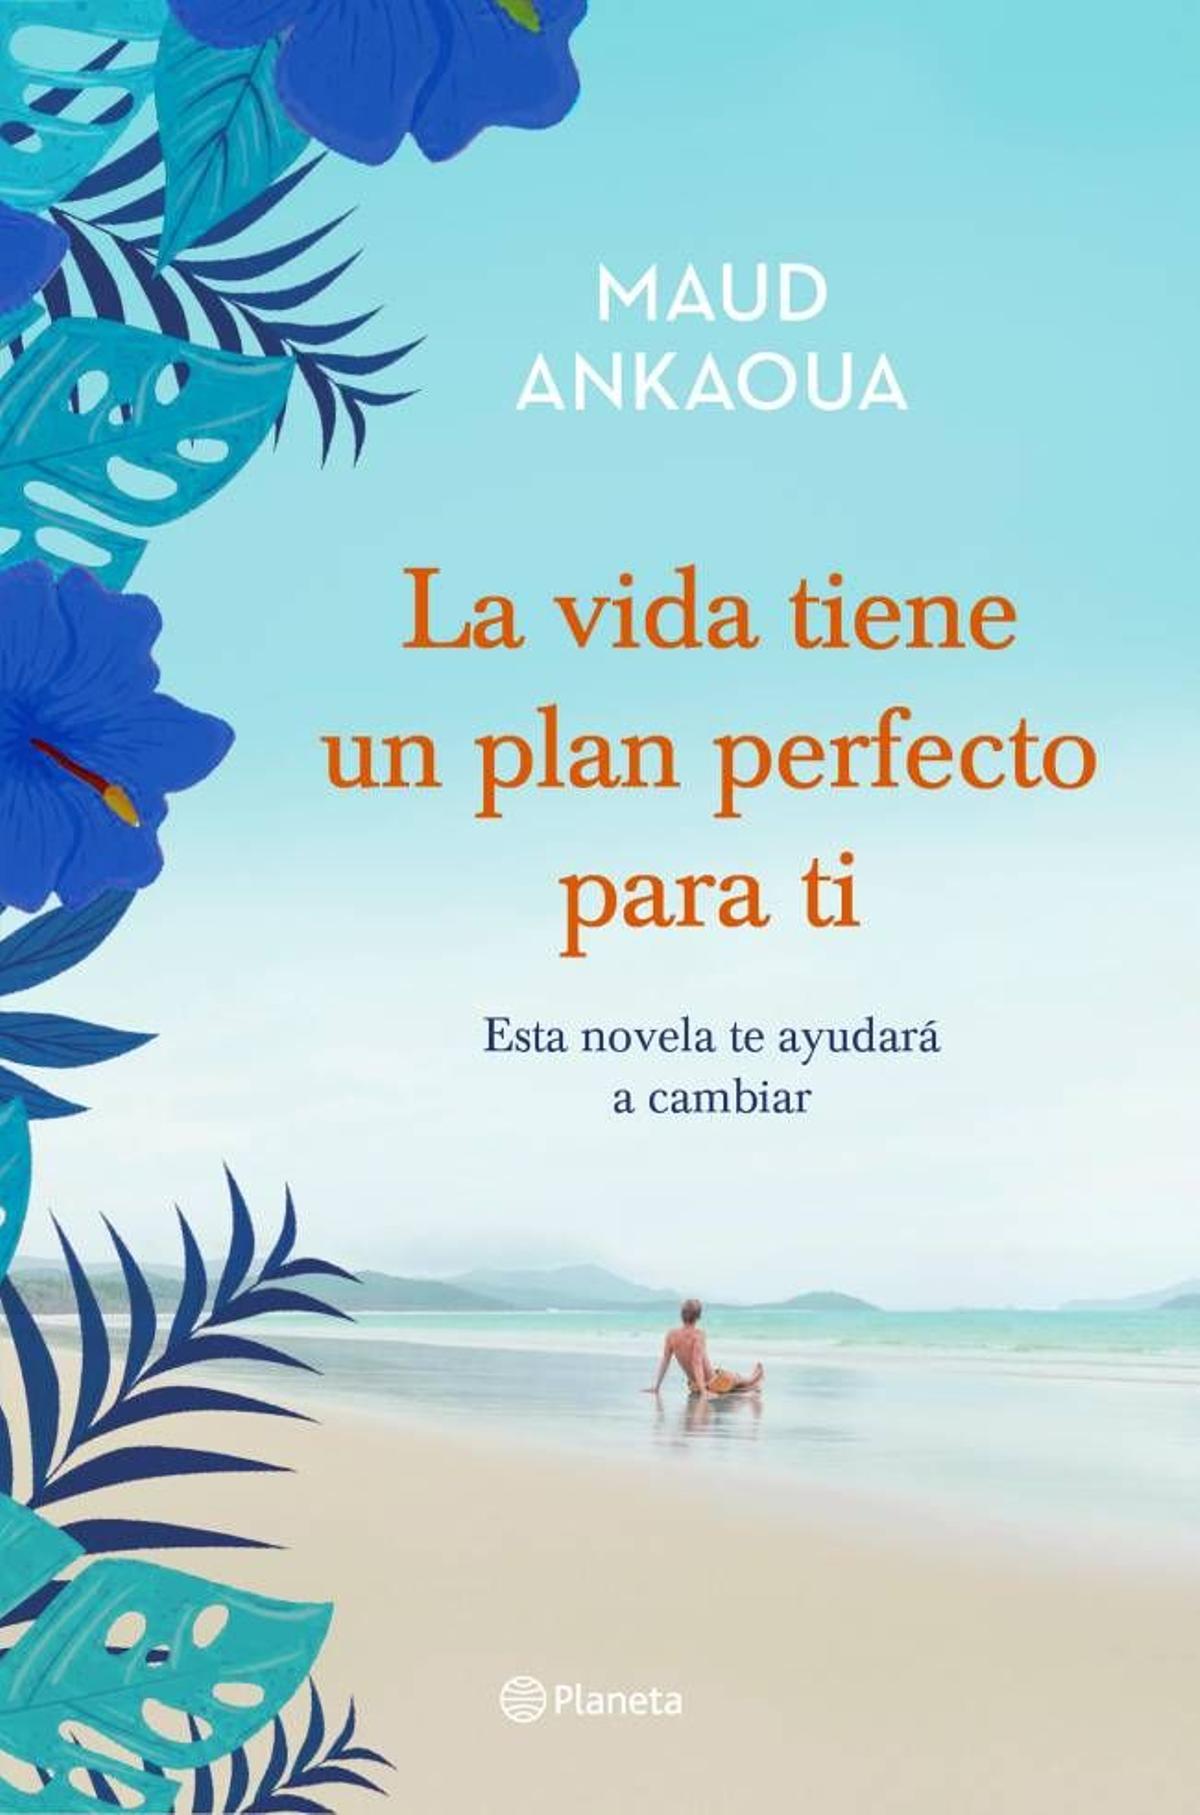 La vida tiene un plan perfecto para ti, de Maoud Ankawa